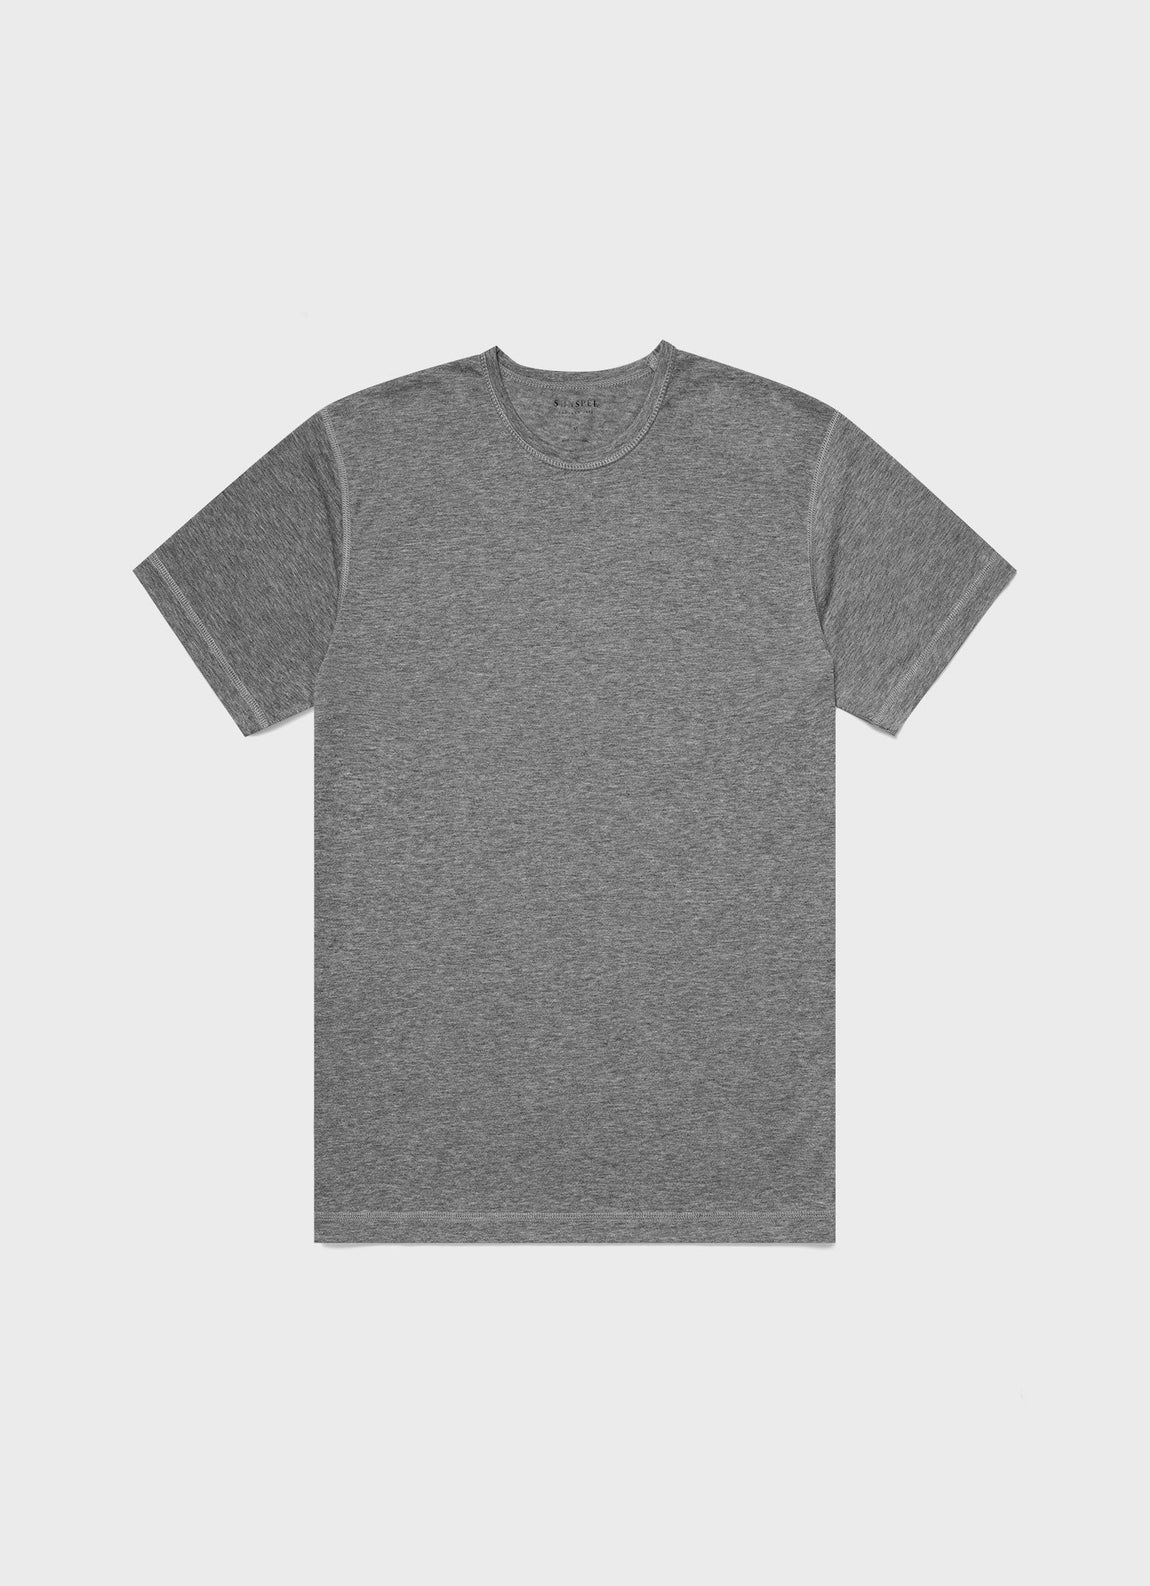 Men's DriRelease Active T-shirt in Grey Melange